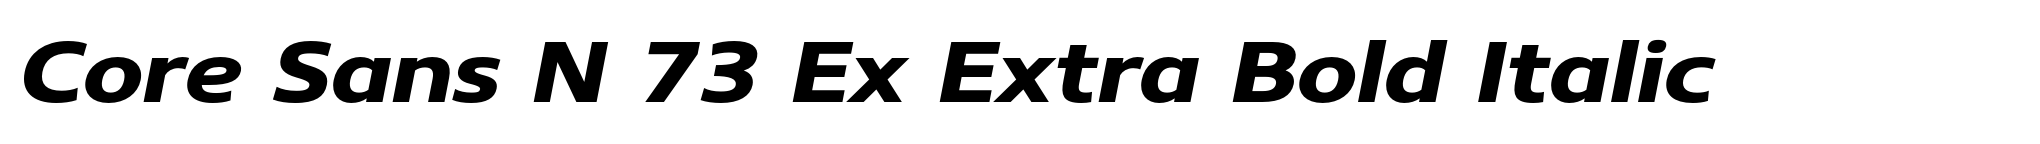 Core Sans N 73 Ex Extra Bold Italic image